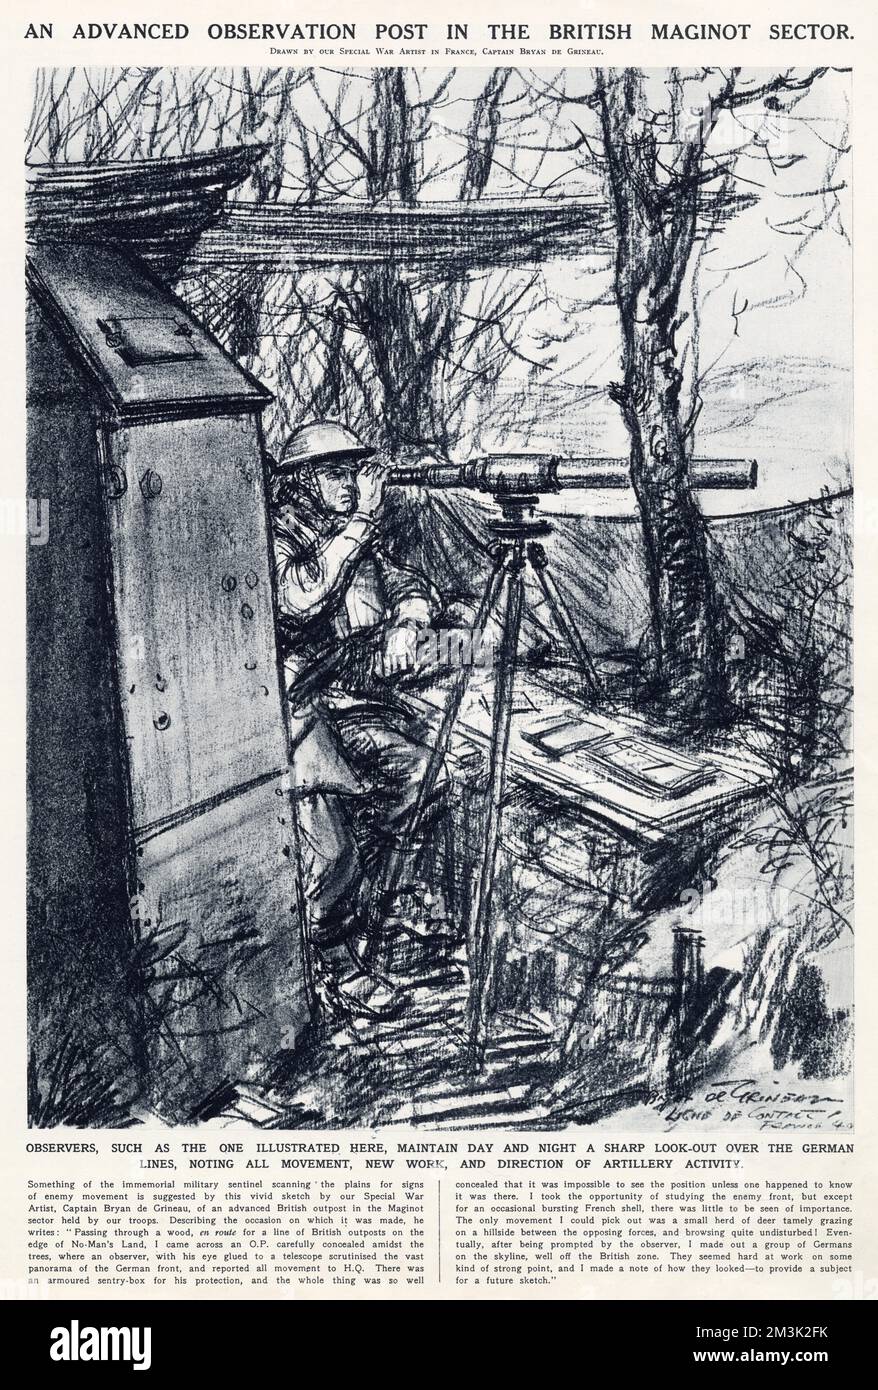 Zeichnung, die einen Advanced Observation Post im britischen Sektor der Maginot-Linie zeigt, März 1940. Dieser Beobachter beobachtete mit einem Teleskop die deutschen Positionen und bemerkte alle feindlichen Bewegungen und Artillerieaktivitäten. Stockfoto